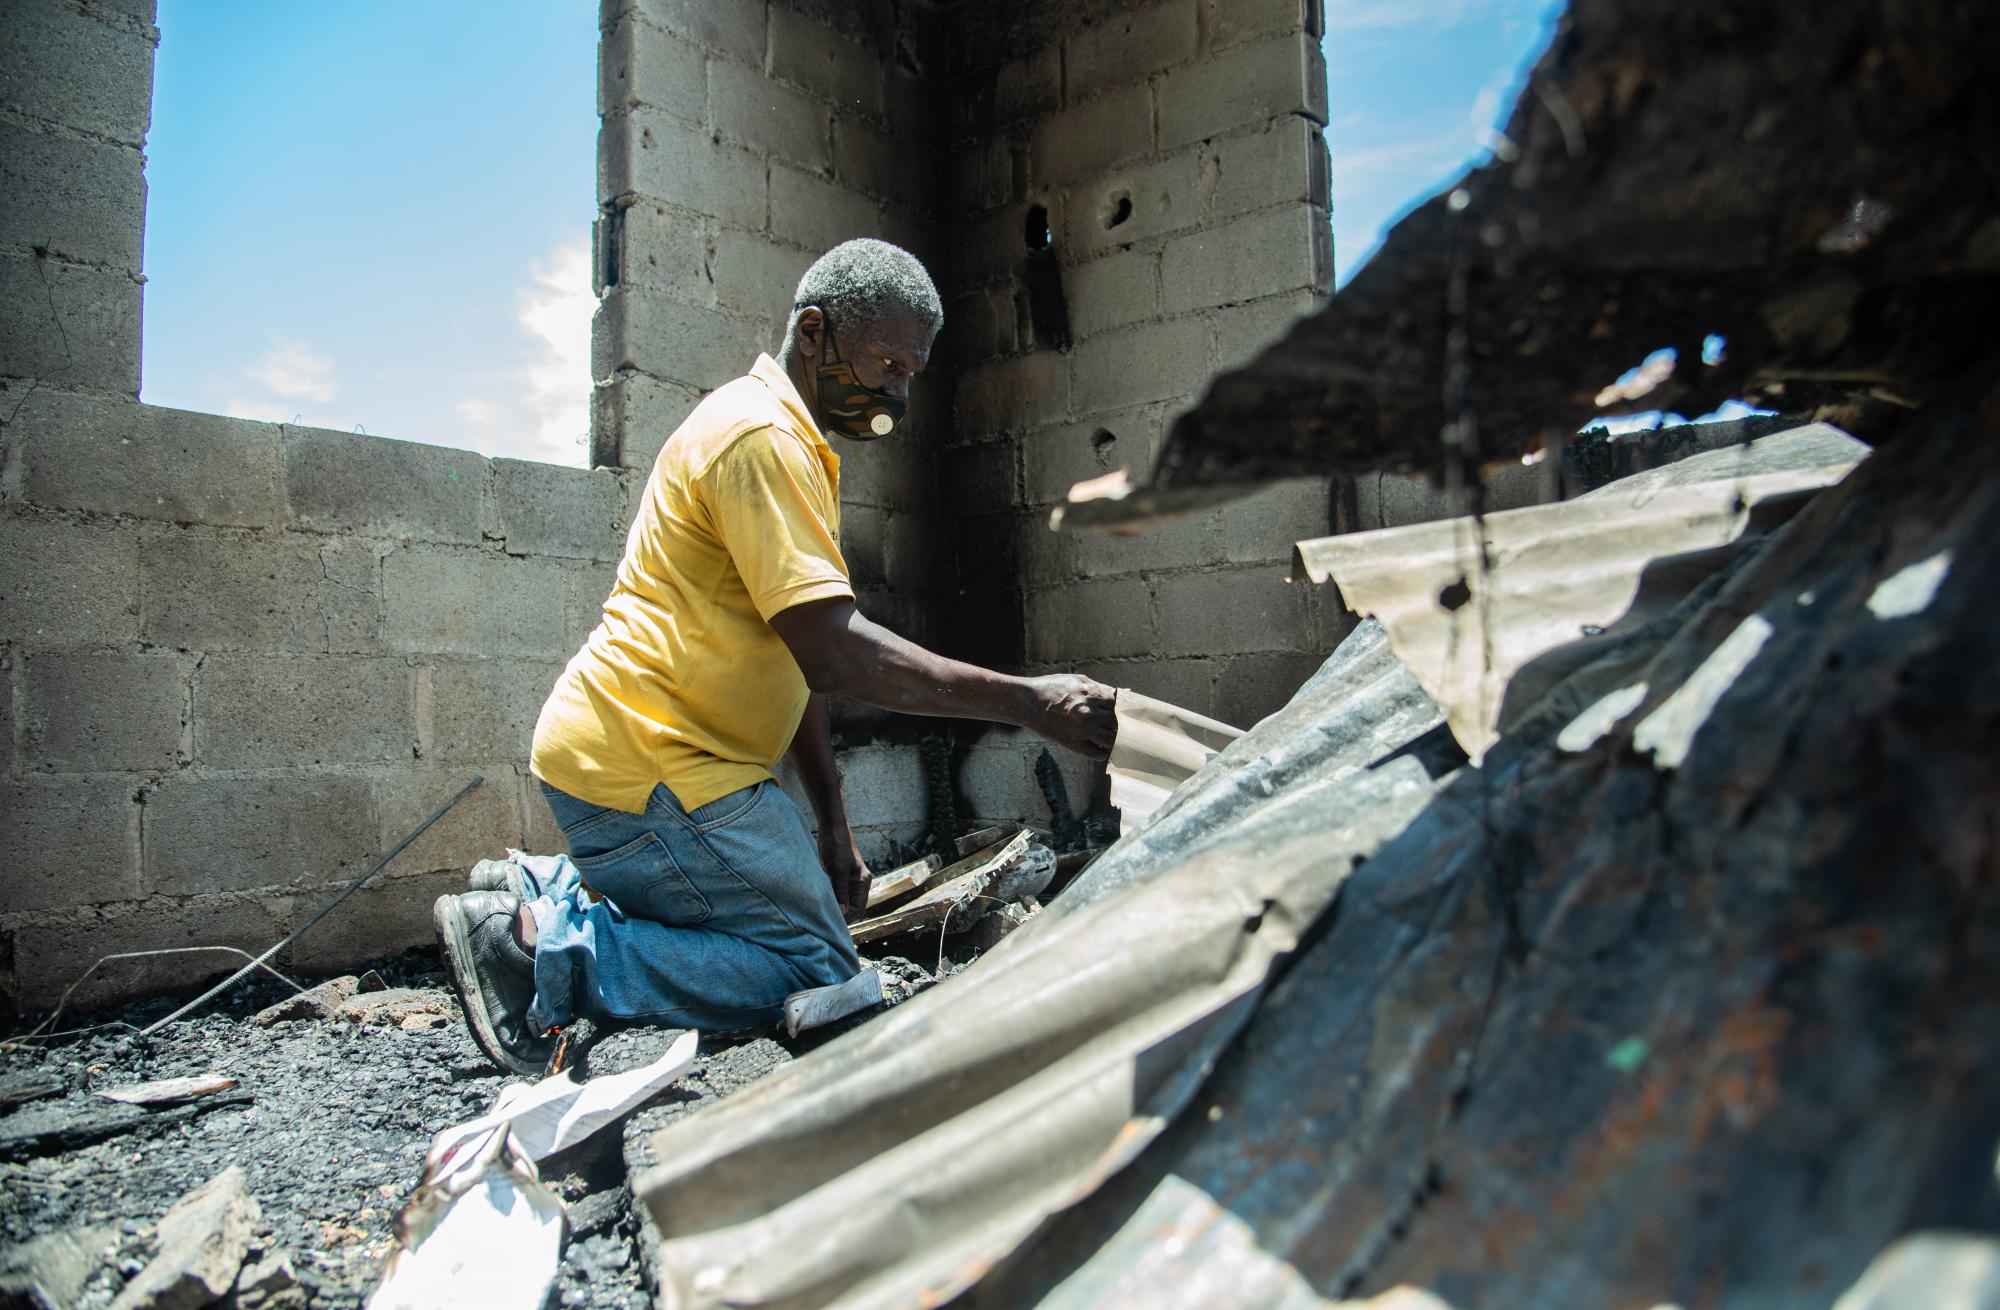 El contenido de las viviendas que fueron alcanzadas por el fuego quedo reducido a cenizas y escombros (Foto: José Arias)